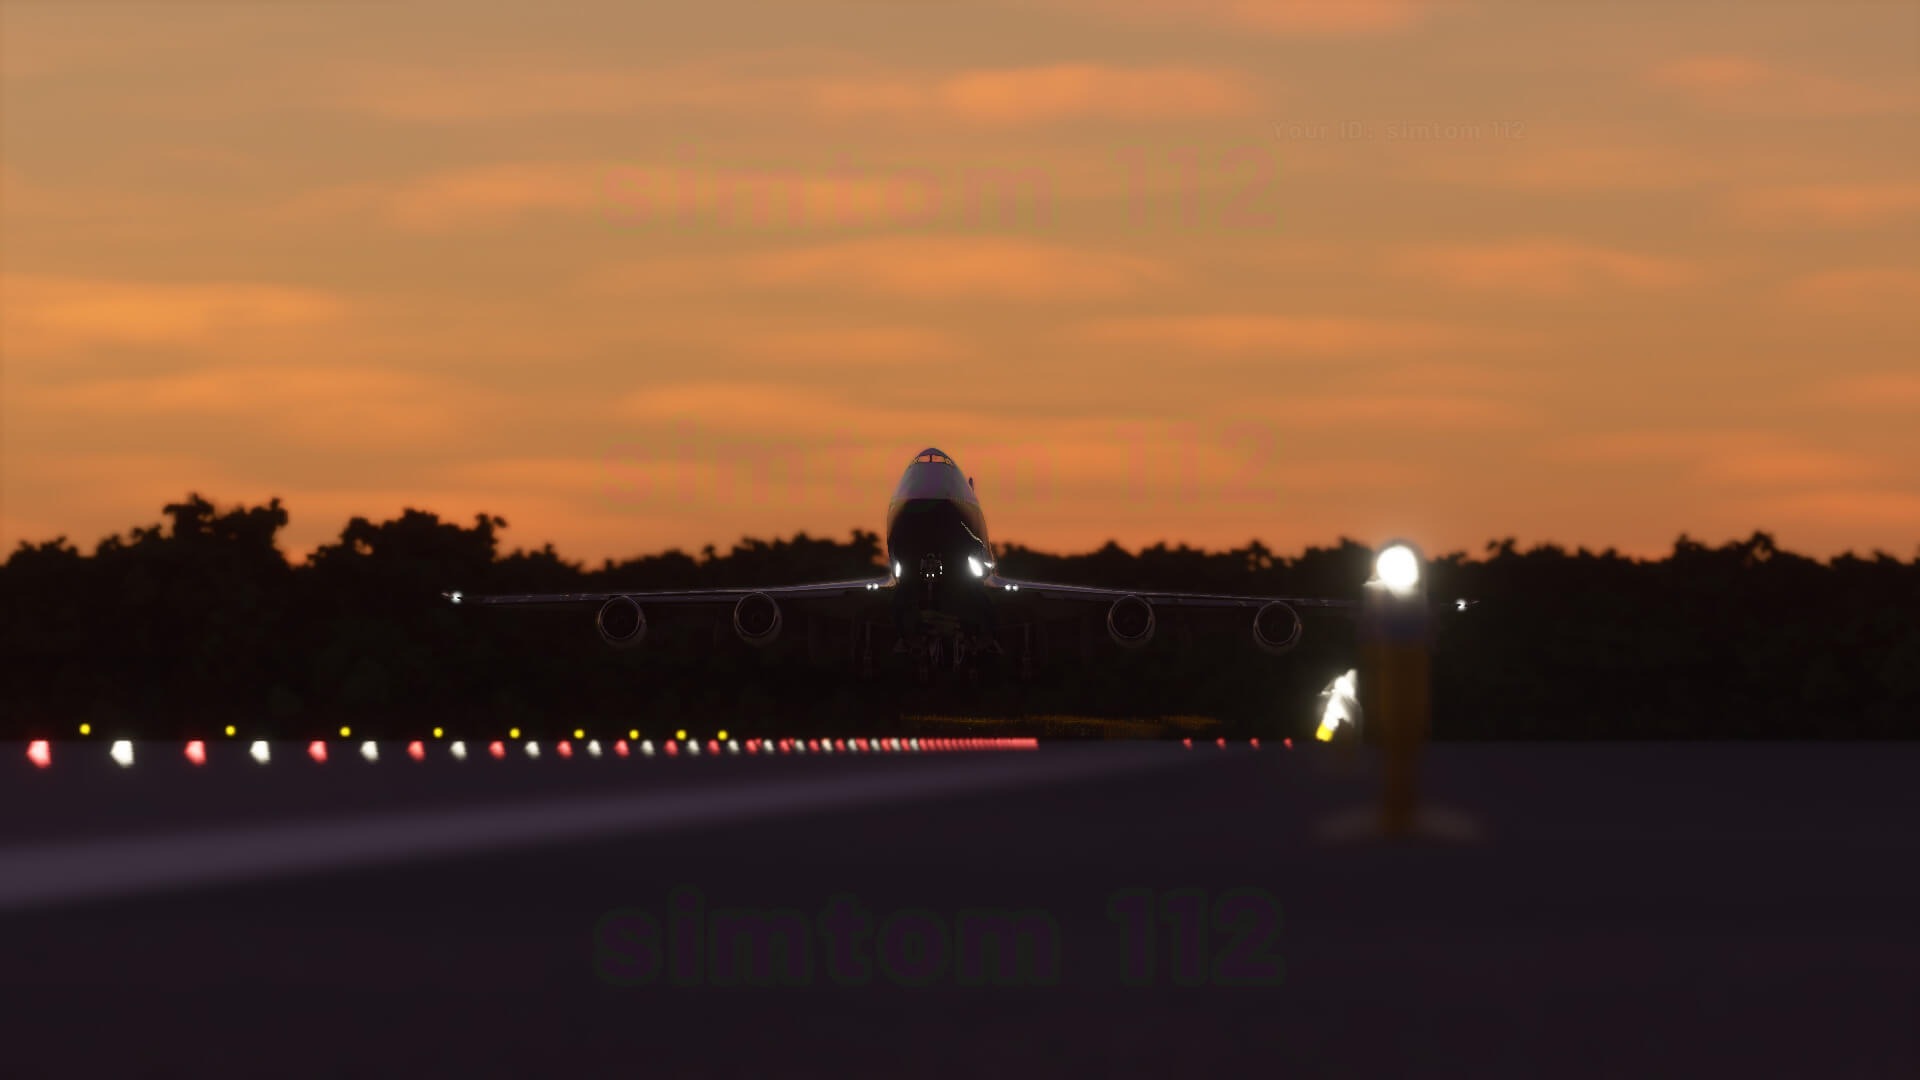 《微軟飛行模擬》全新截圖 聚焦波音747